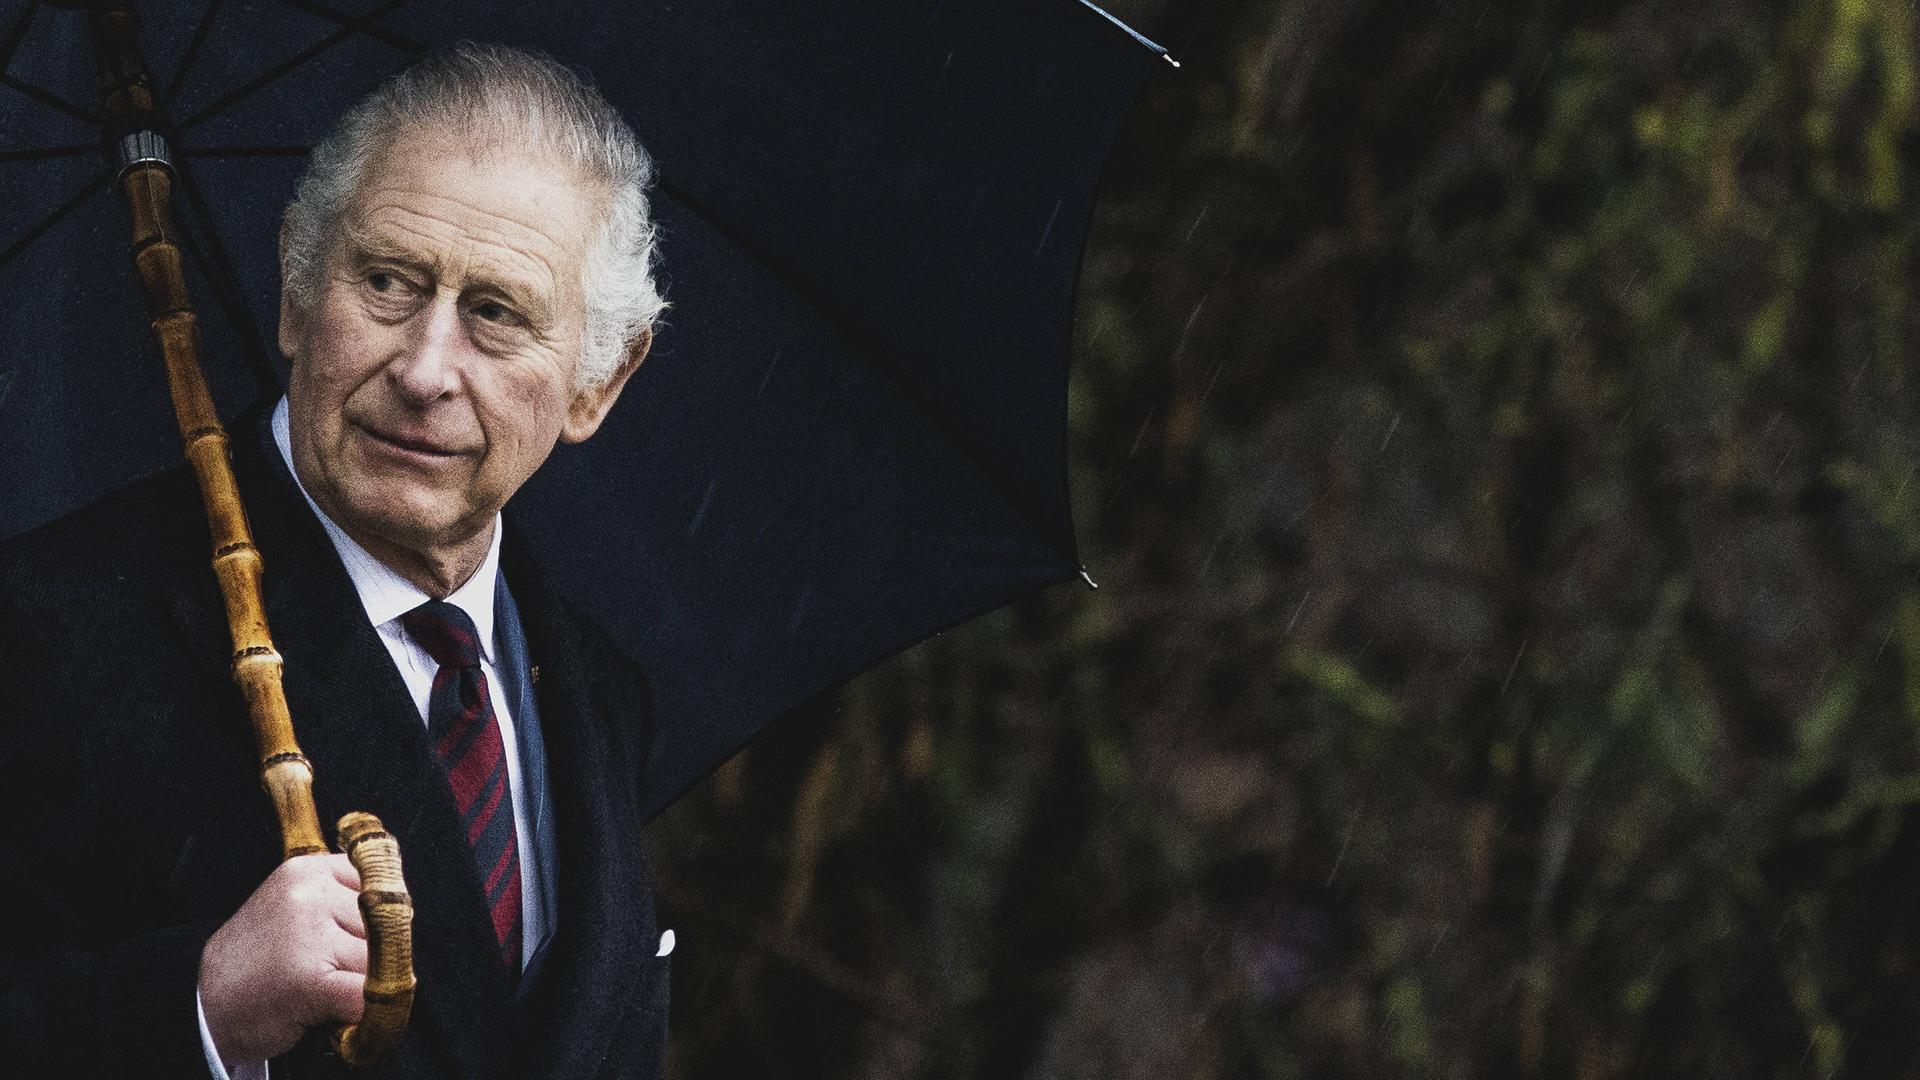 König Charles der III. vor dunklem Hintergrund. In der linken Hand hält er einen Regenschirm und guckt links aus dem Bild raus.